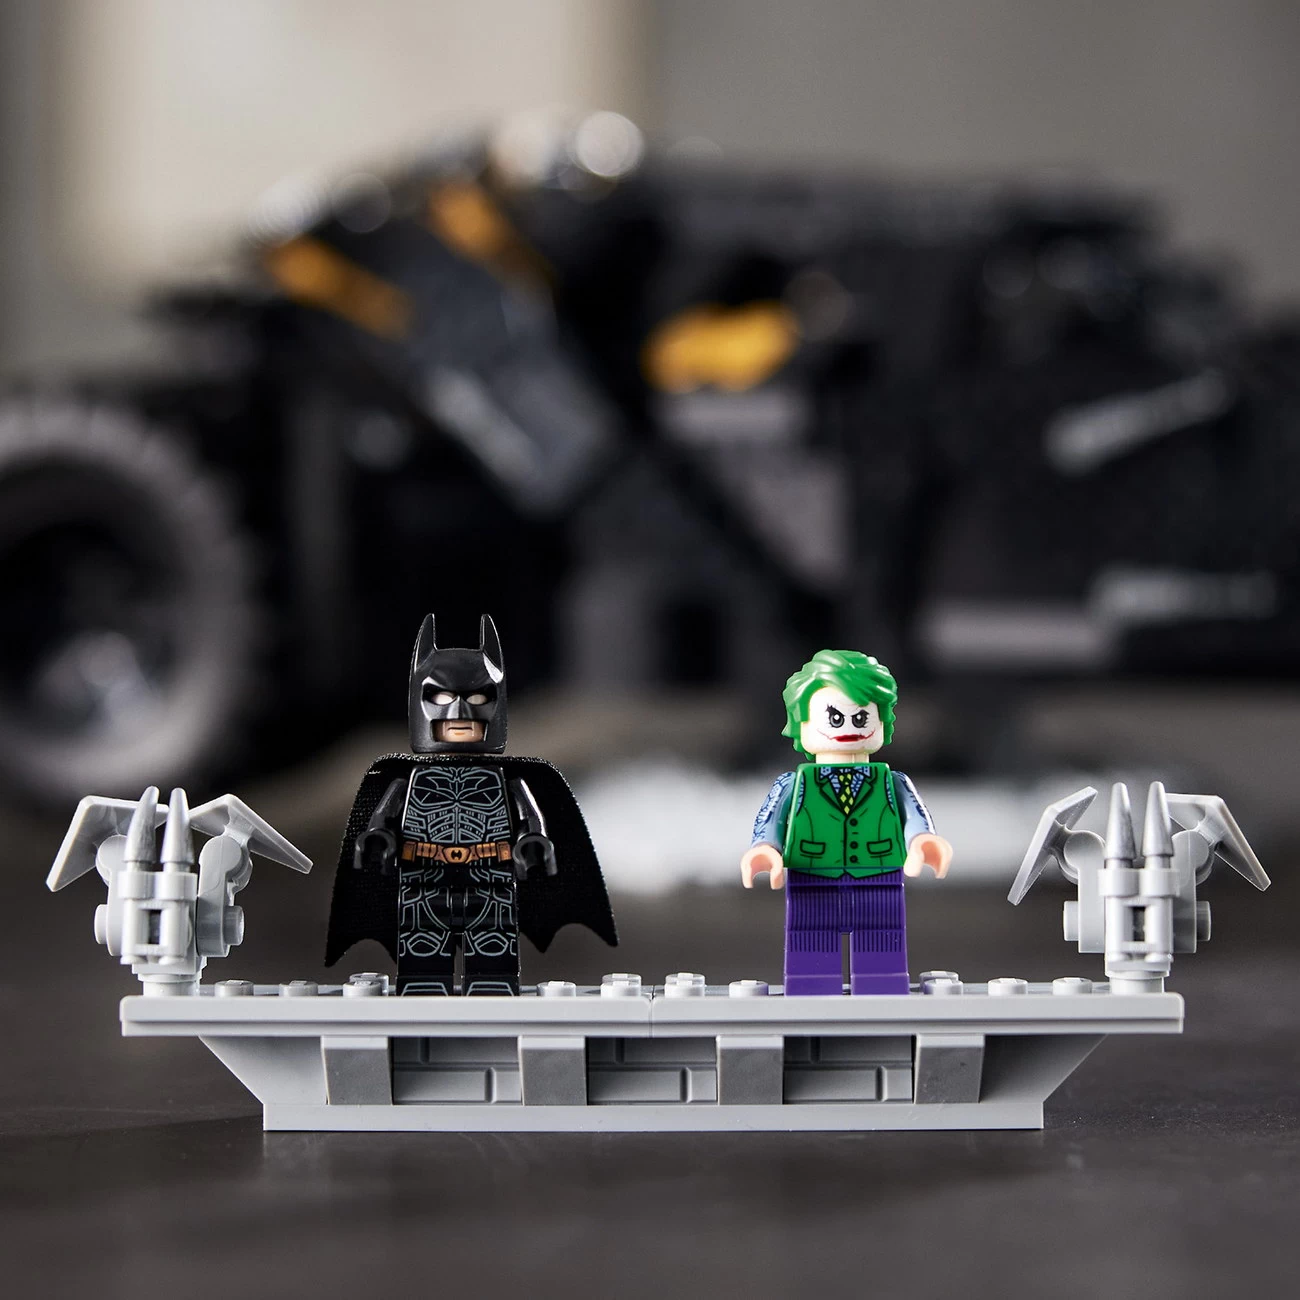 LEGO DC Batman - Batmobile Tumbler (76240)